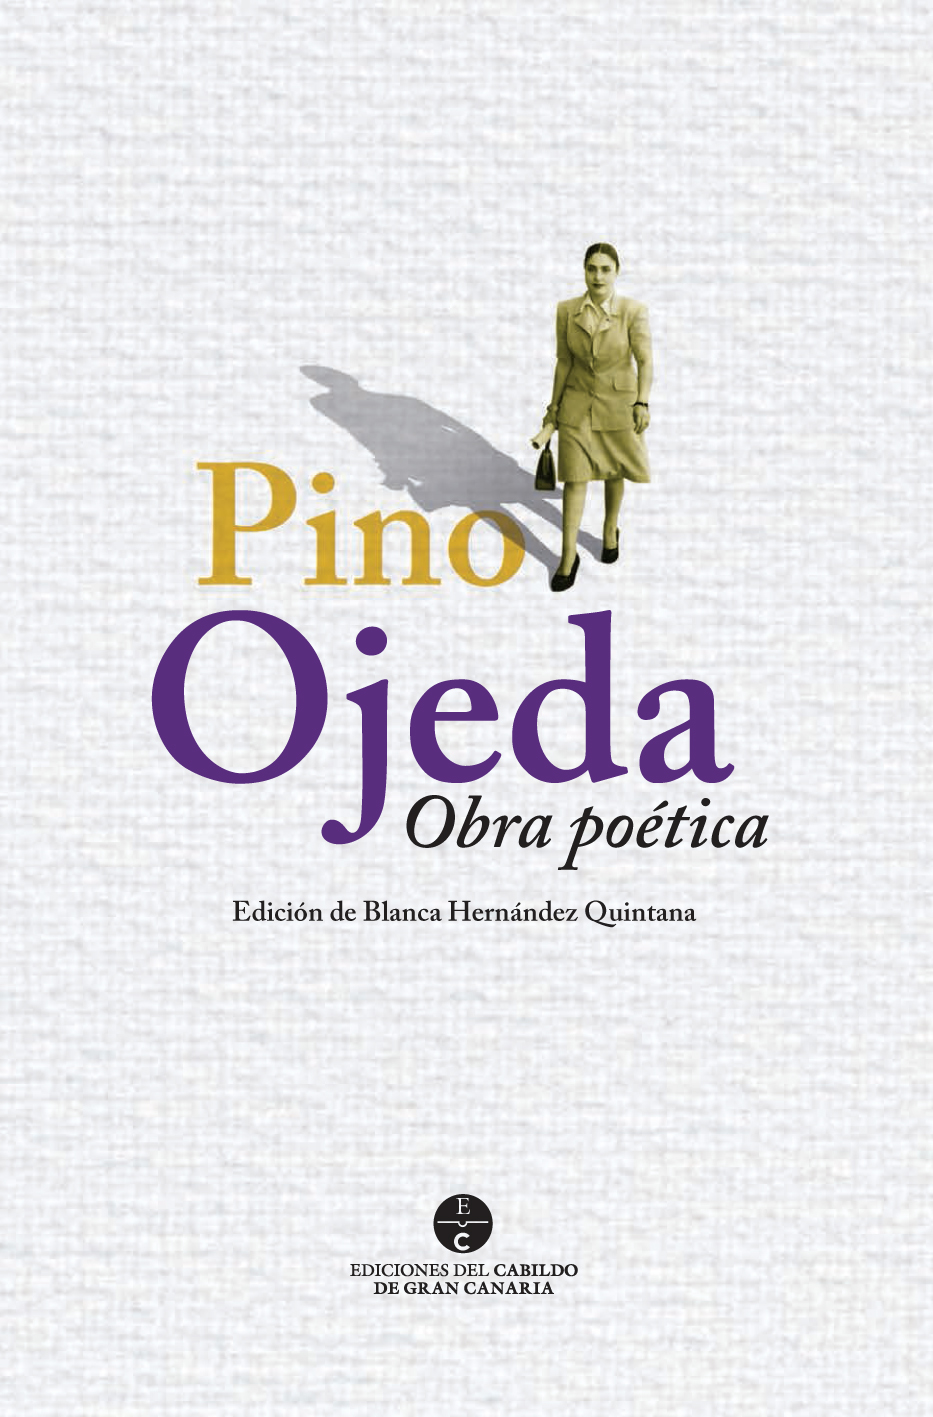 Cubierta del libro dedicado a Pino Ojedea publicado por el Cabildo de Gran Canaria